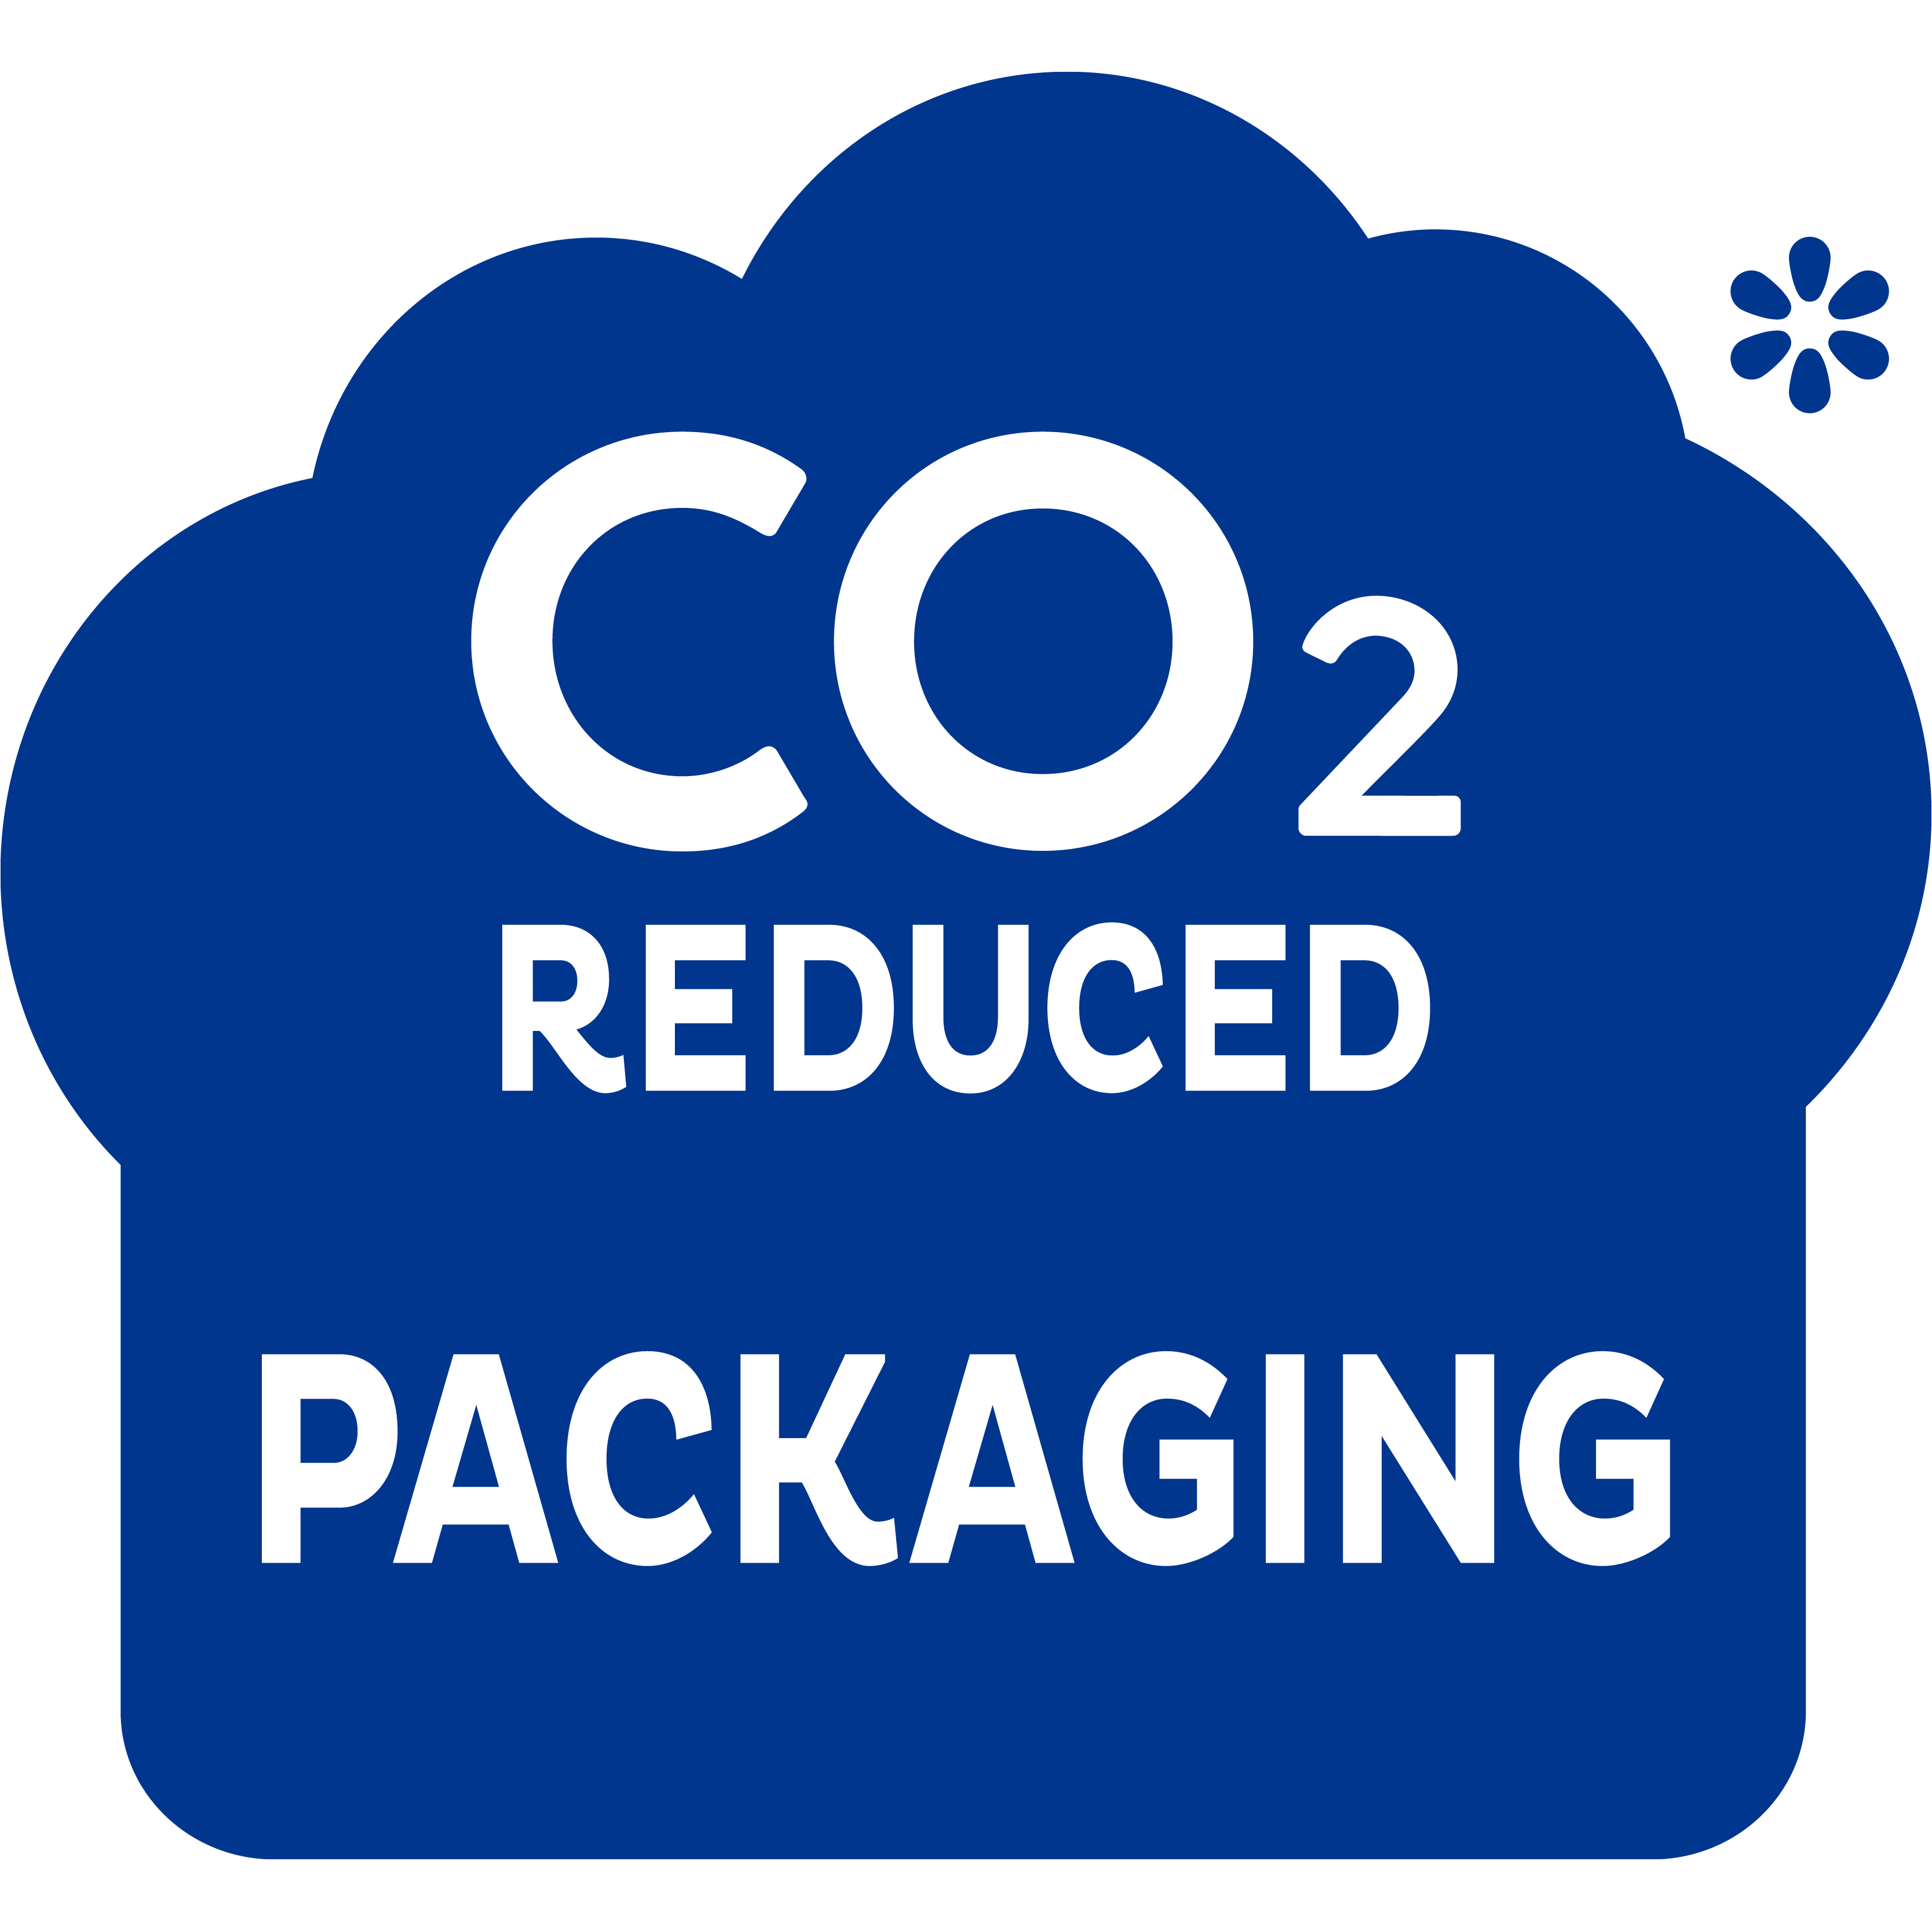 CO2-redusert emballasje – for et steg i riktig retning